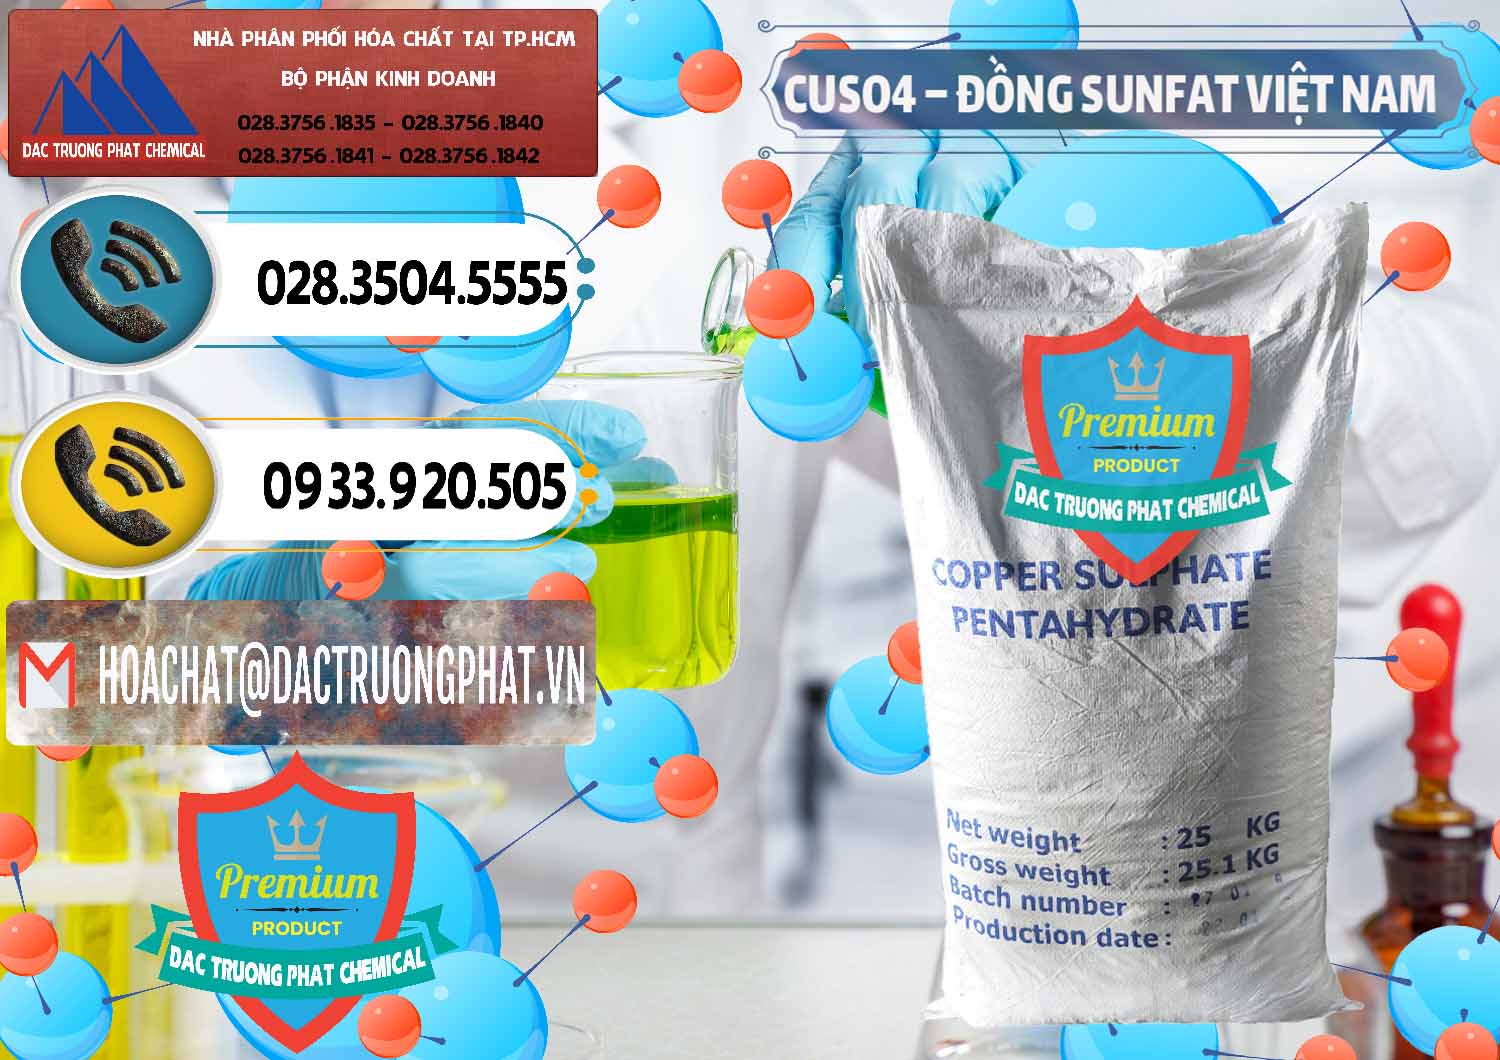 Đơn vị chuyên phân phối và bán CuSO4 – Đồng Sunfat Dạng Bột Việt Nam - 0196 - Nơi bán và phân phối hóa chất tại TP.HCM - hoachatdetnhuom.vn